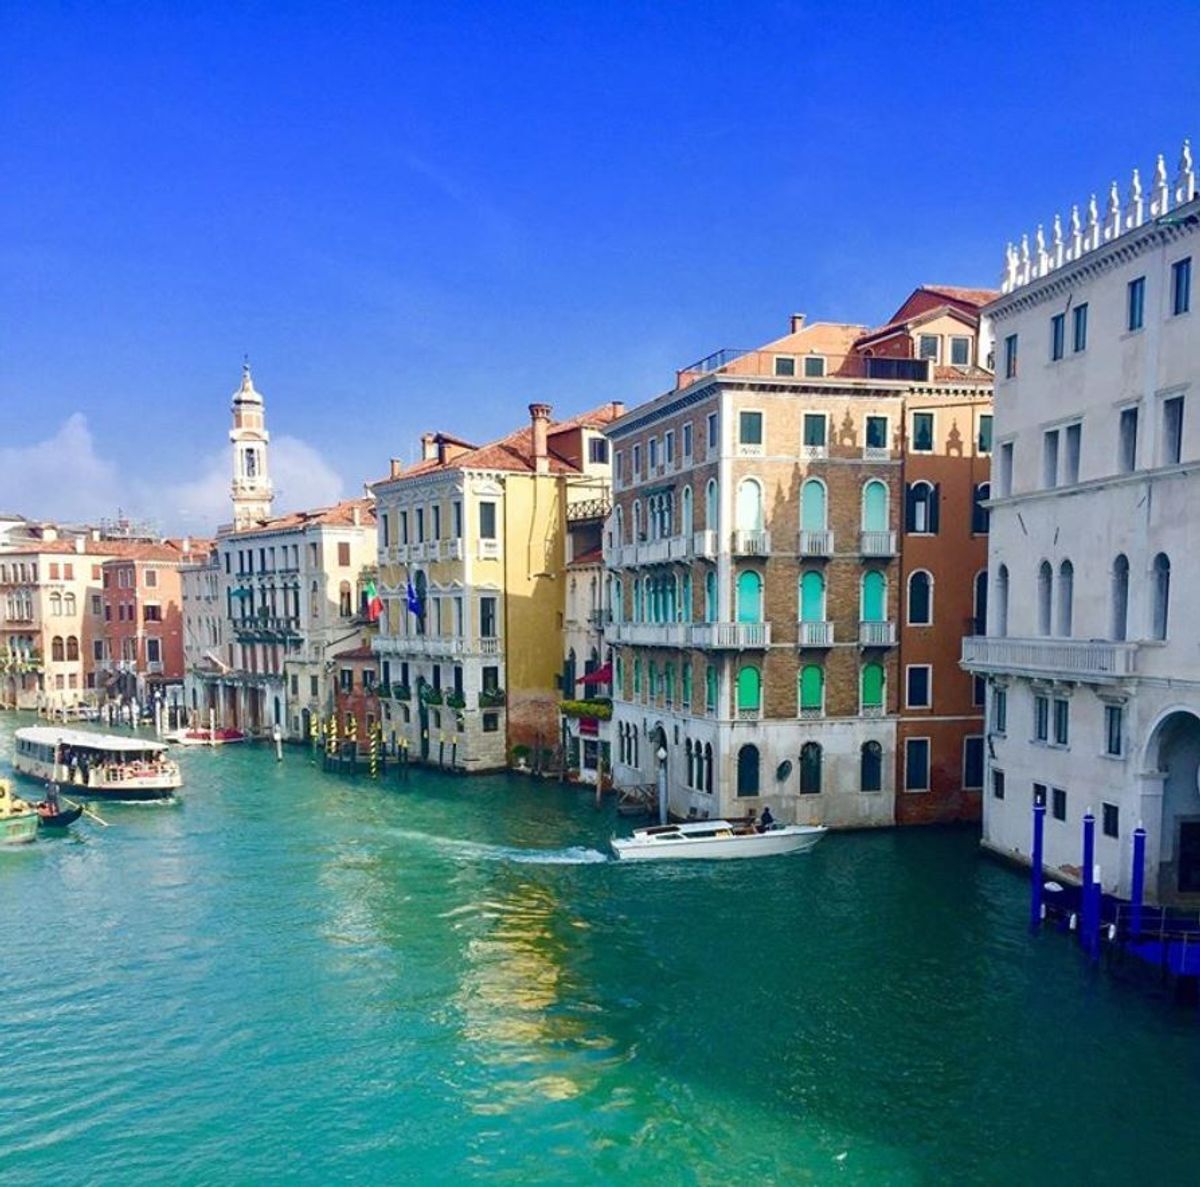 Venezia & Caccia al Tesoro: Una Nuova Avventura nella Serenissima desktop picture